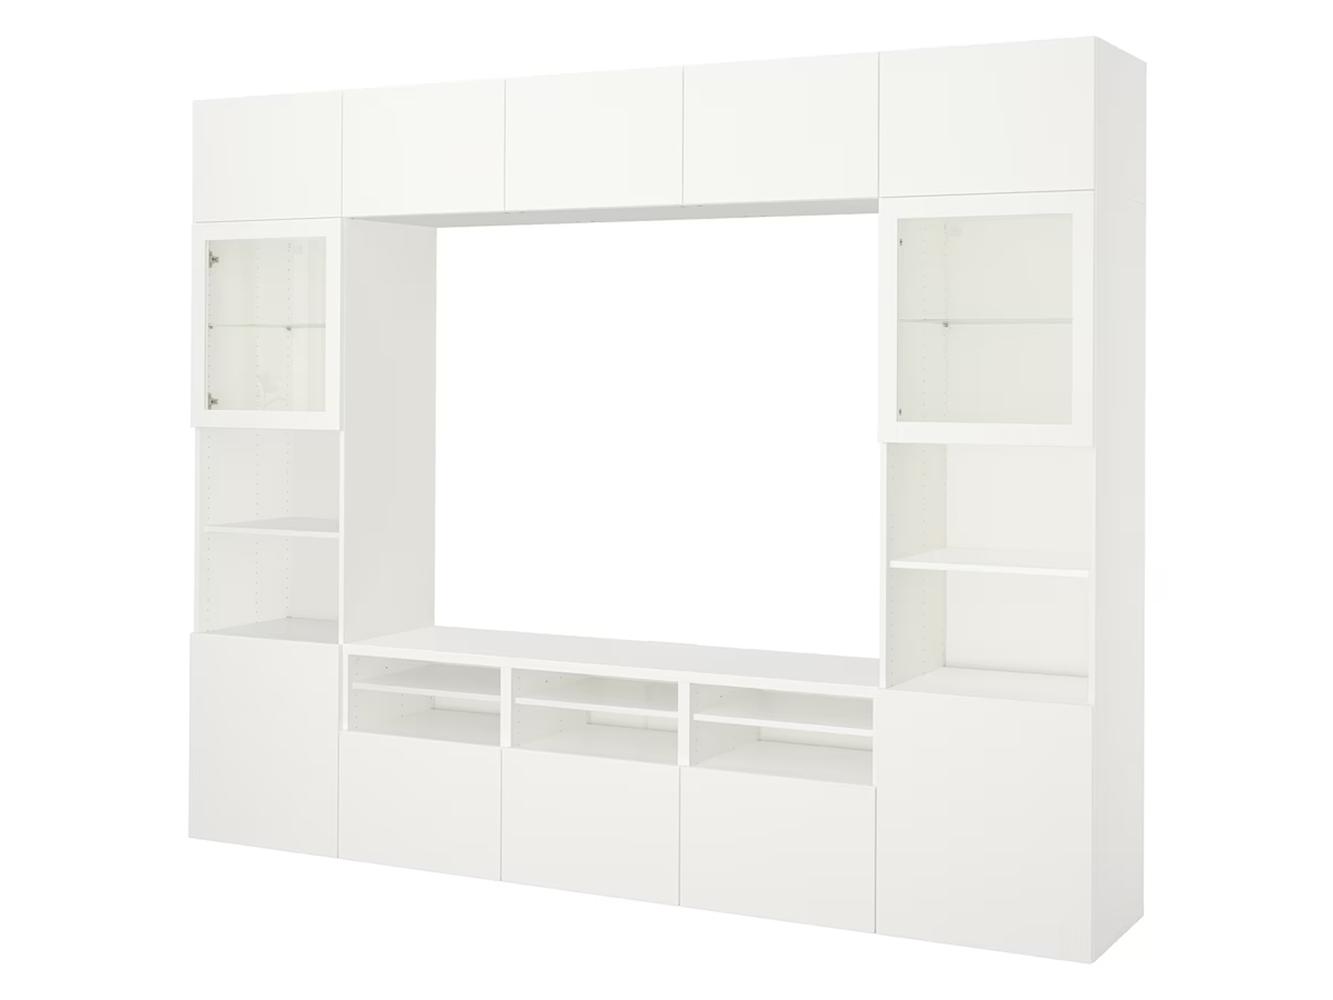 Стенка Беста 413 white ИКЕА (IKEA) изображение товара